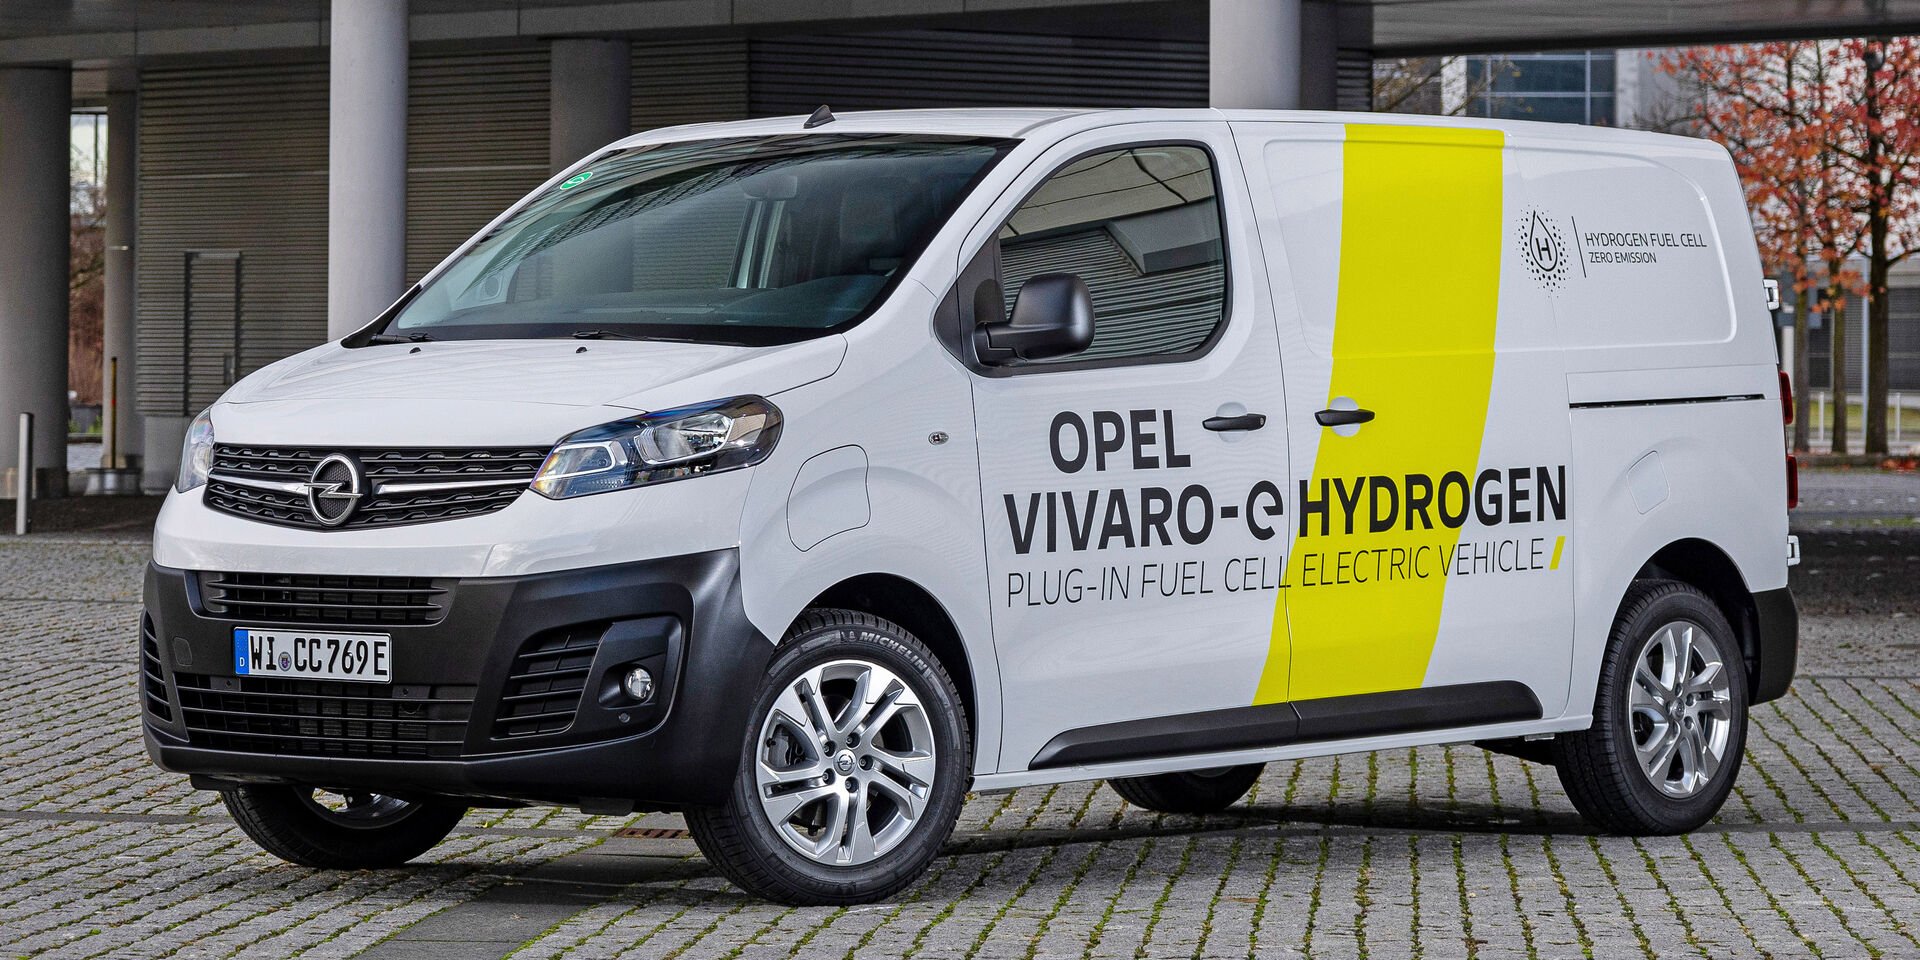 Opel Vivaro-e Hydrogen: Was kann die Wasserstoff-Brennstoffzelle